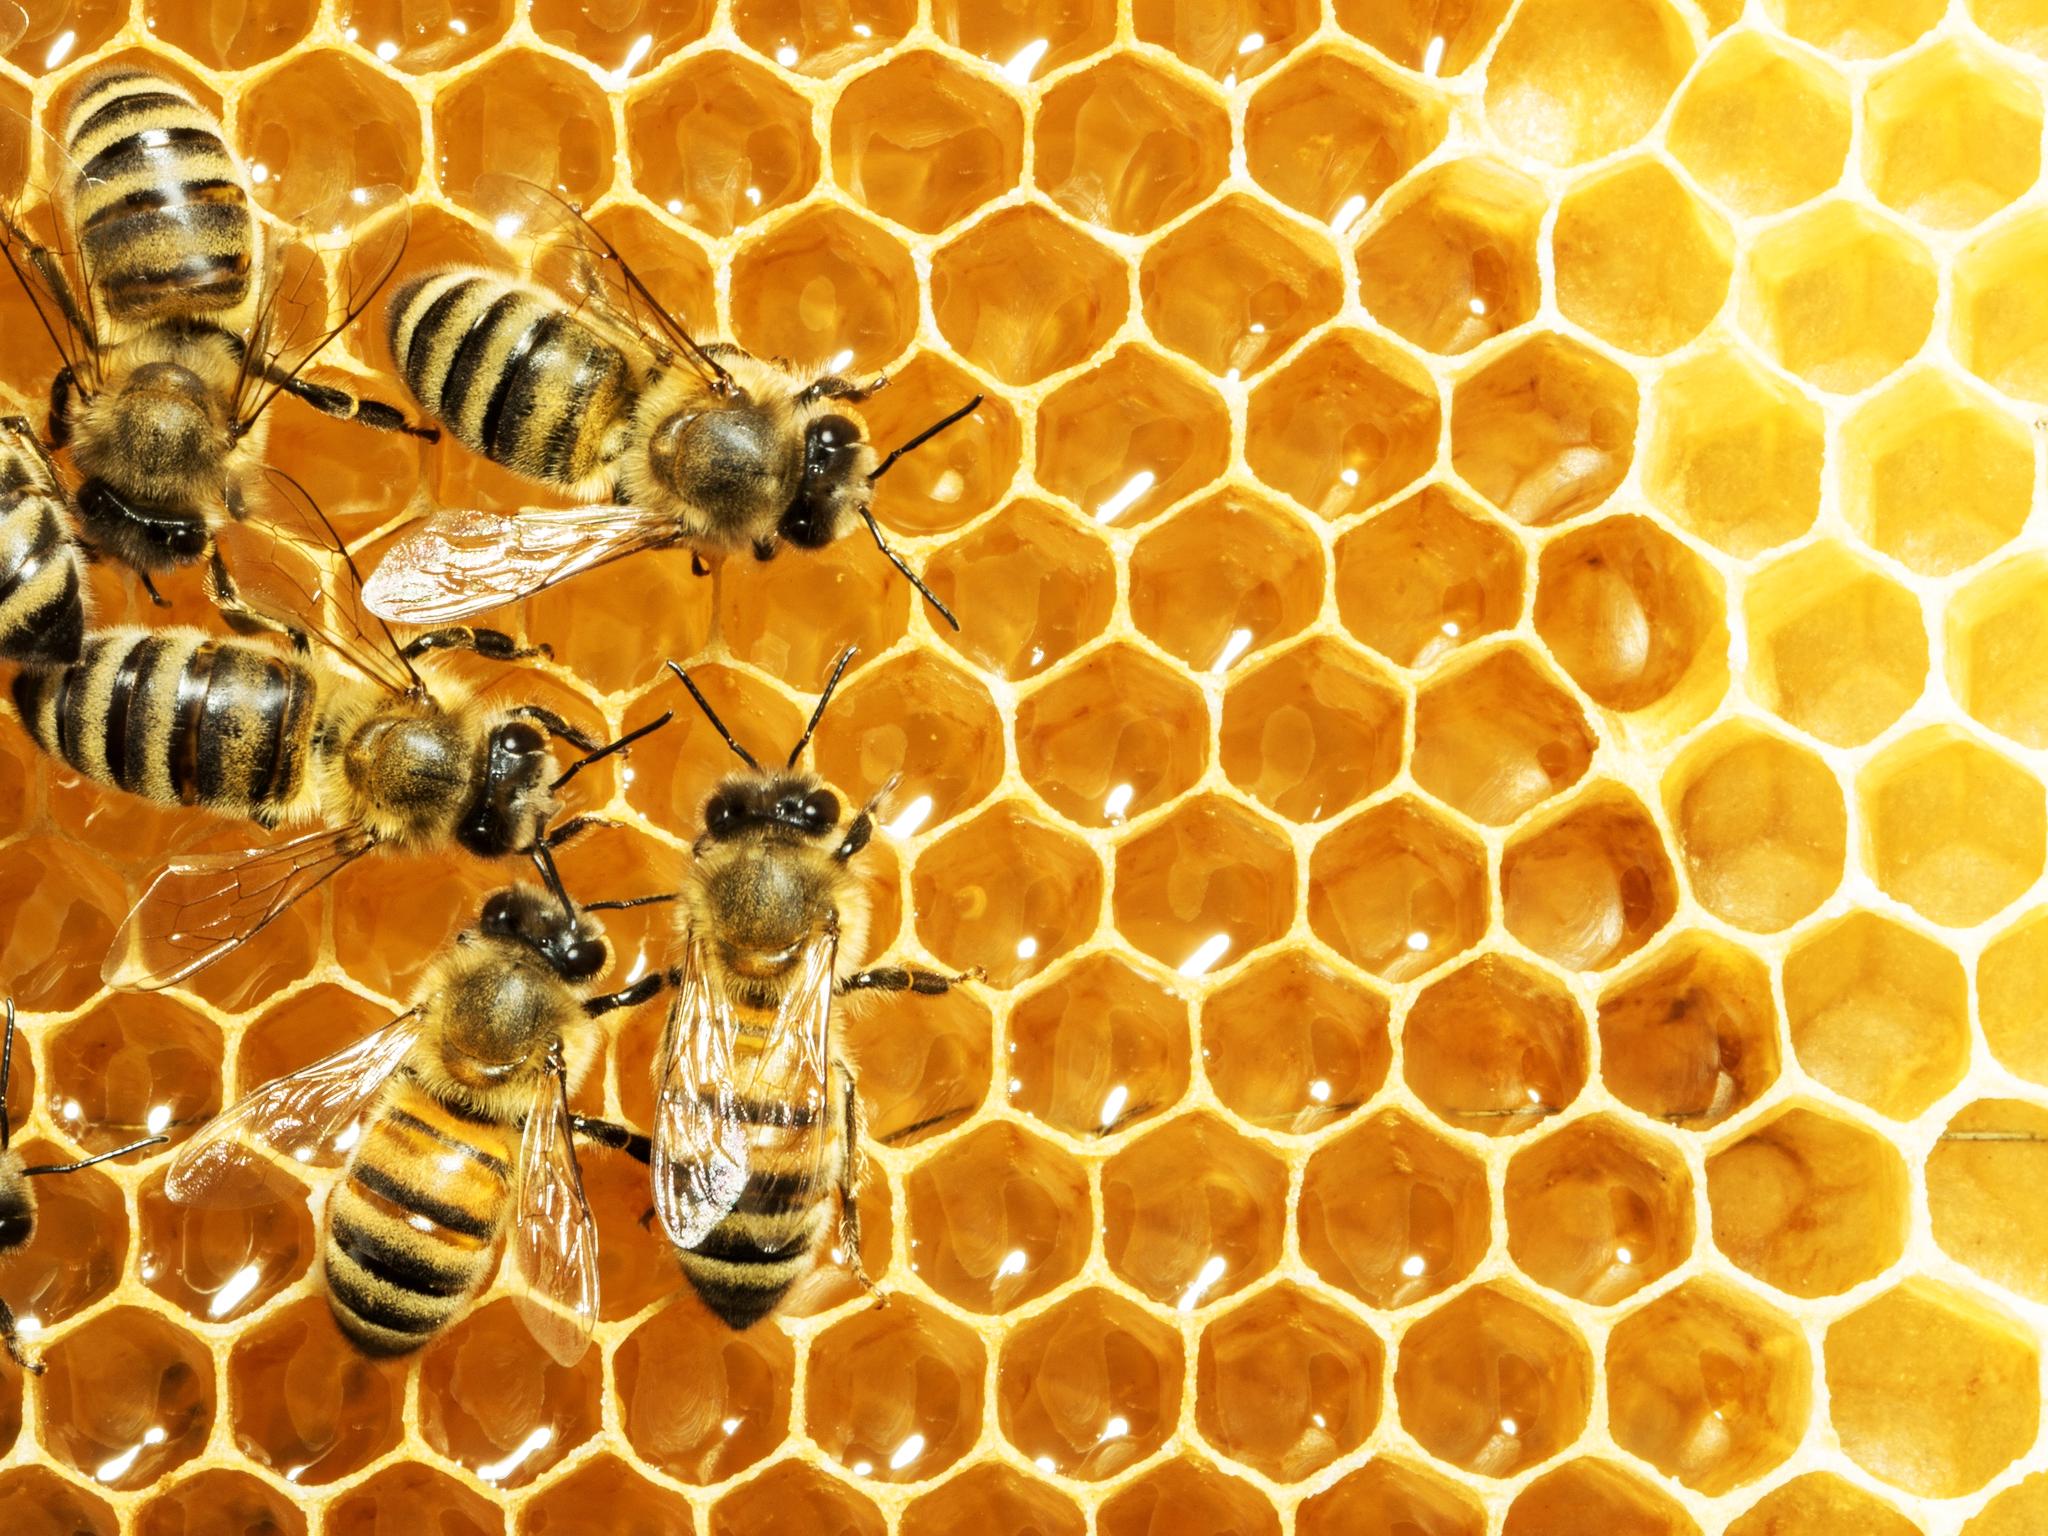   Honningbiene, våre seksbeinte flyvende husdyr som gir oss honning og bidrar til bestøvning, teller noe slikt som 83 milliarder individer. Også her er det damer som styrer skuta, og damer som gjør all jobben.  